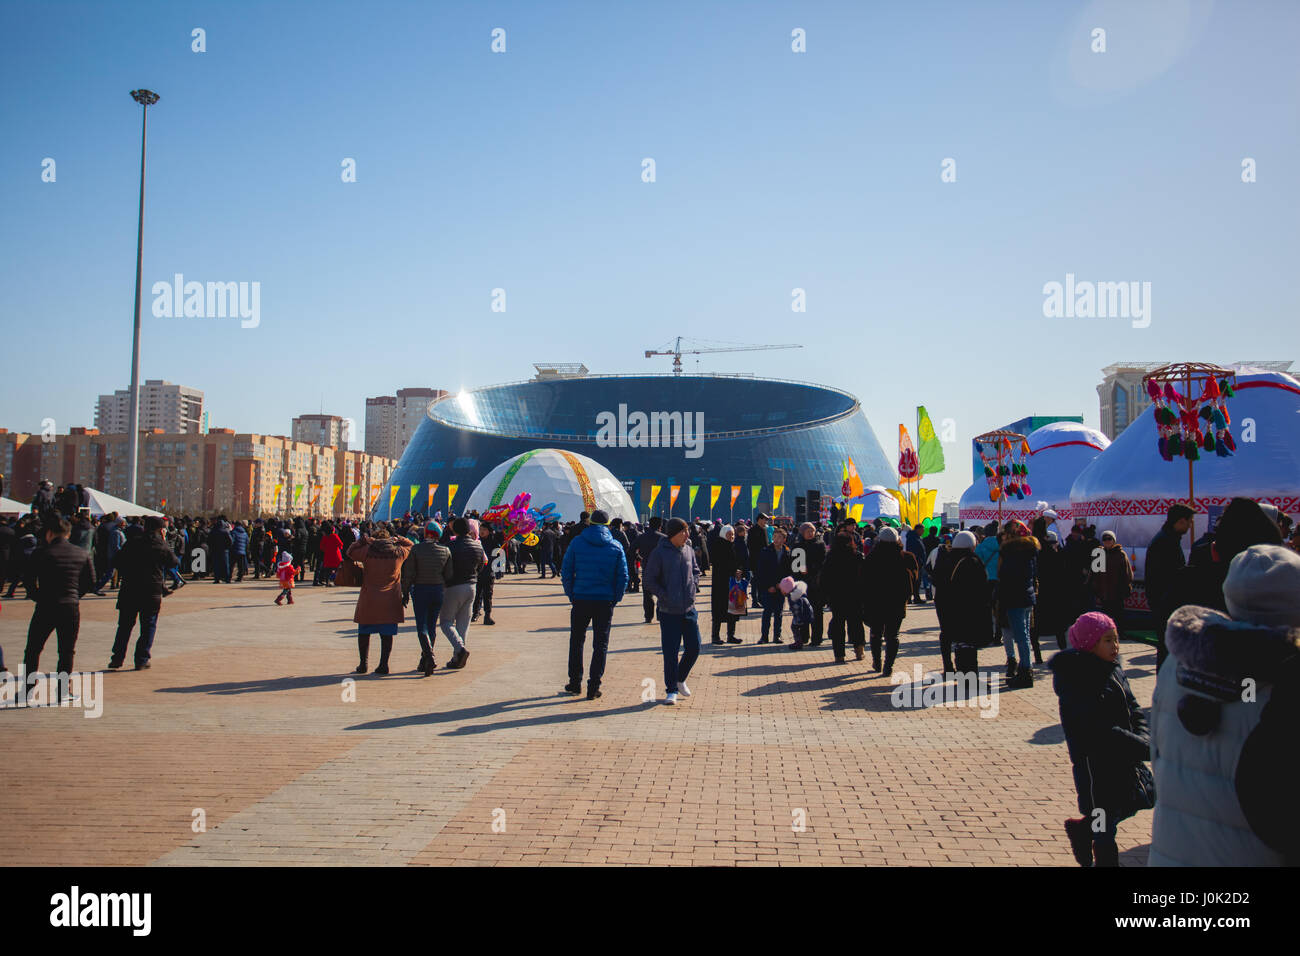 La maison de vacances traditionnelle de Nauryz à Astana le 22 mars. Les gens marchent sur une journée ensoleillée. Il y a des concerts et des compétitions différentes. Banque D'Images